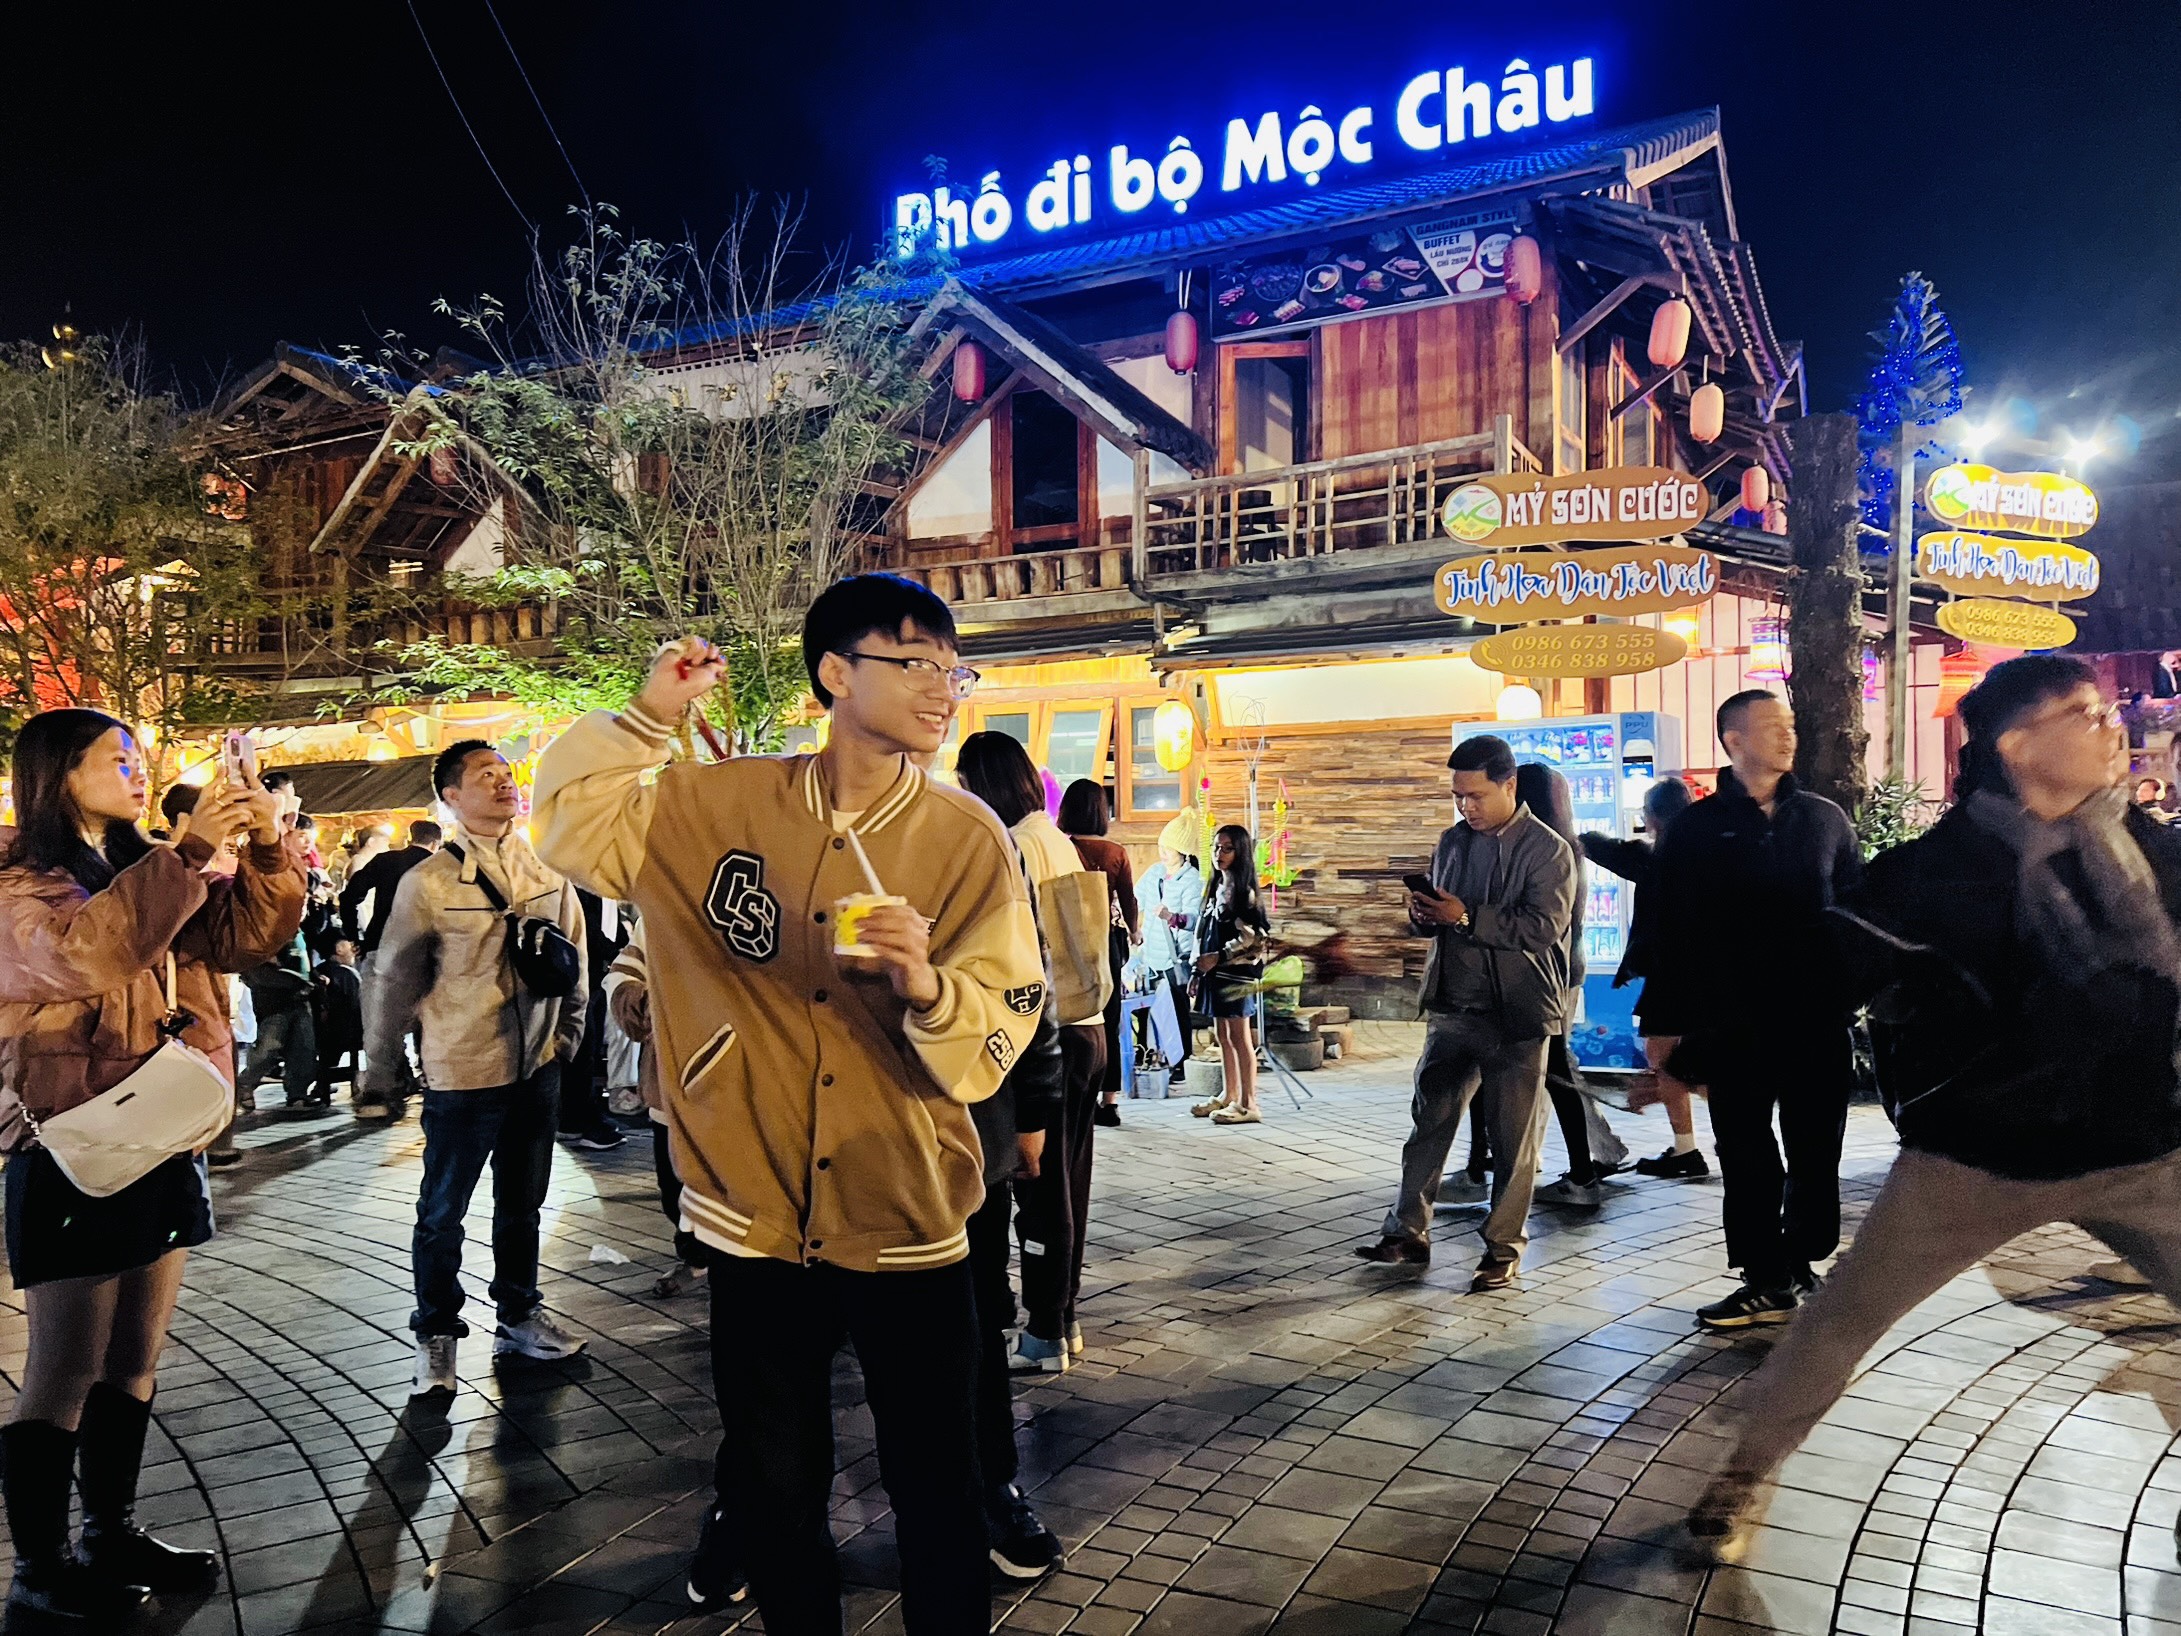 Rộn ràng đêm ở phố đi bộ Mộc Châu những ngày đầu năm mới- Ảnh 15.